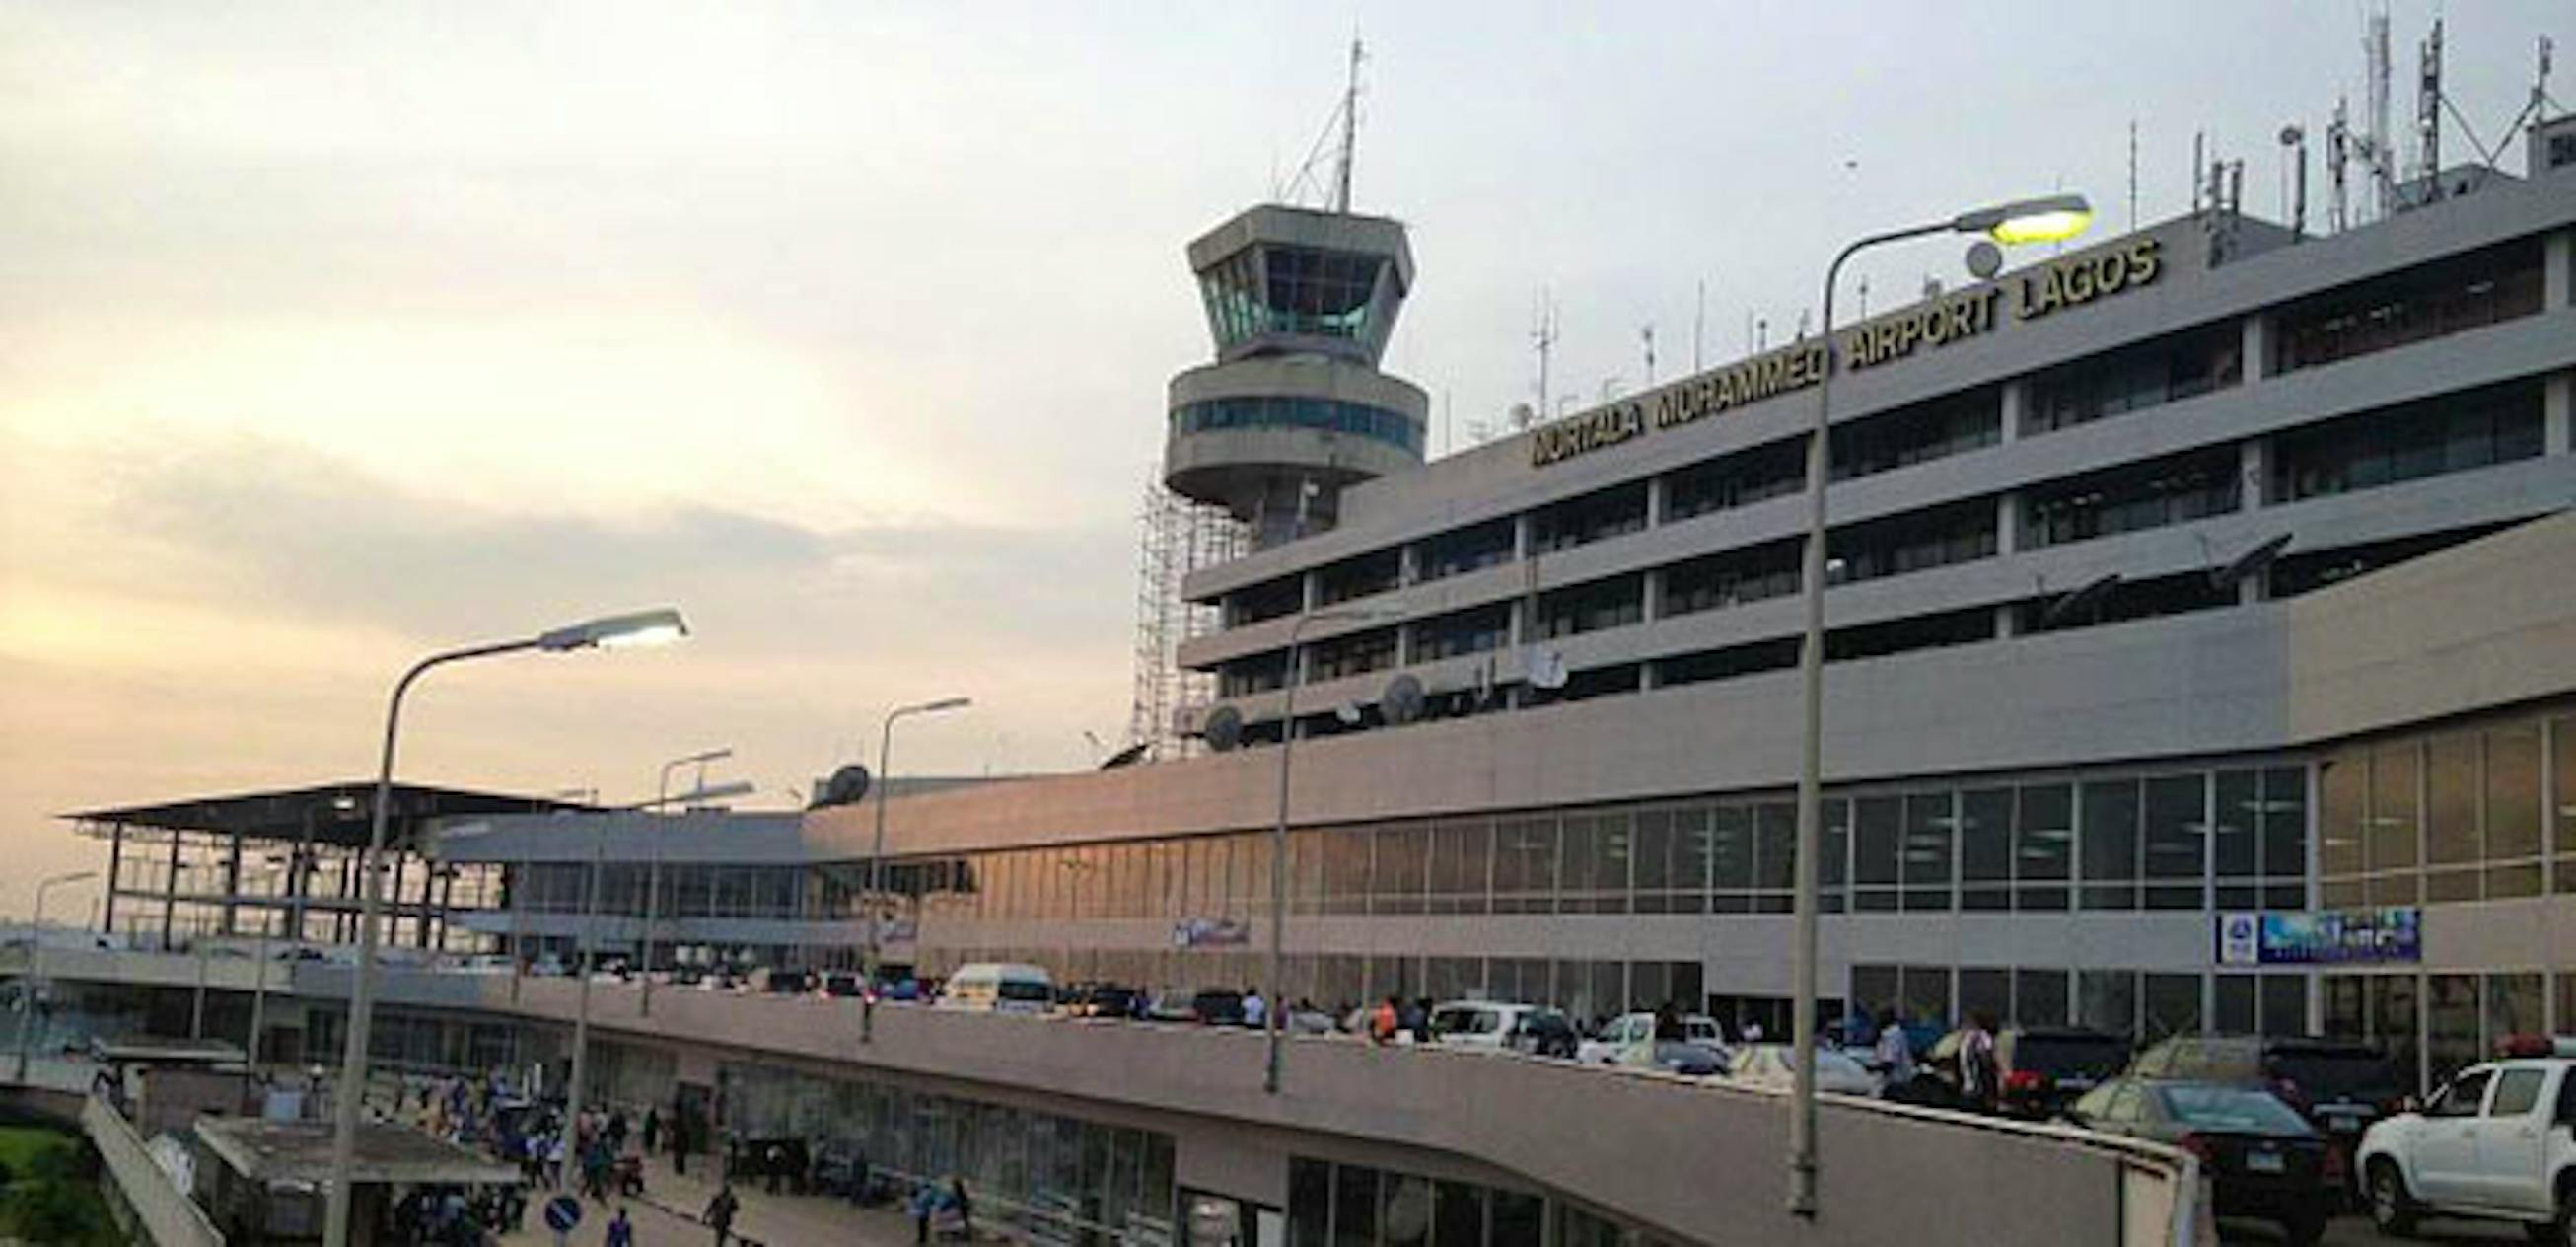 Куда прибывают. Аэропорт Лагос. Лагос Нигерия аэропорт. Международный аэропорт Мурталы Мохаммеда. Муртала Мухаммед Лагос.